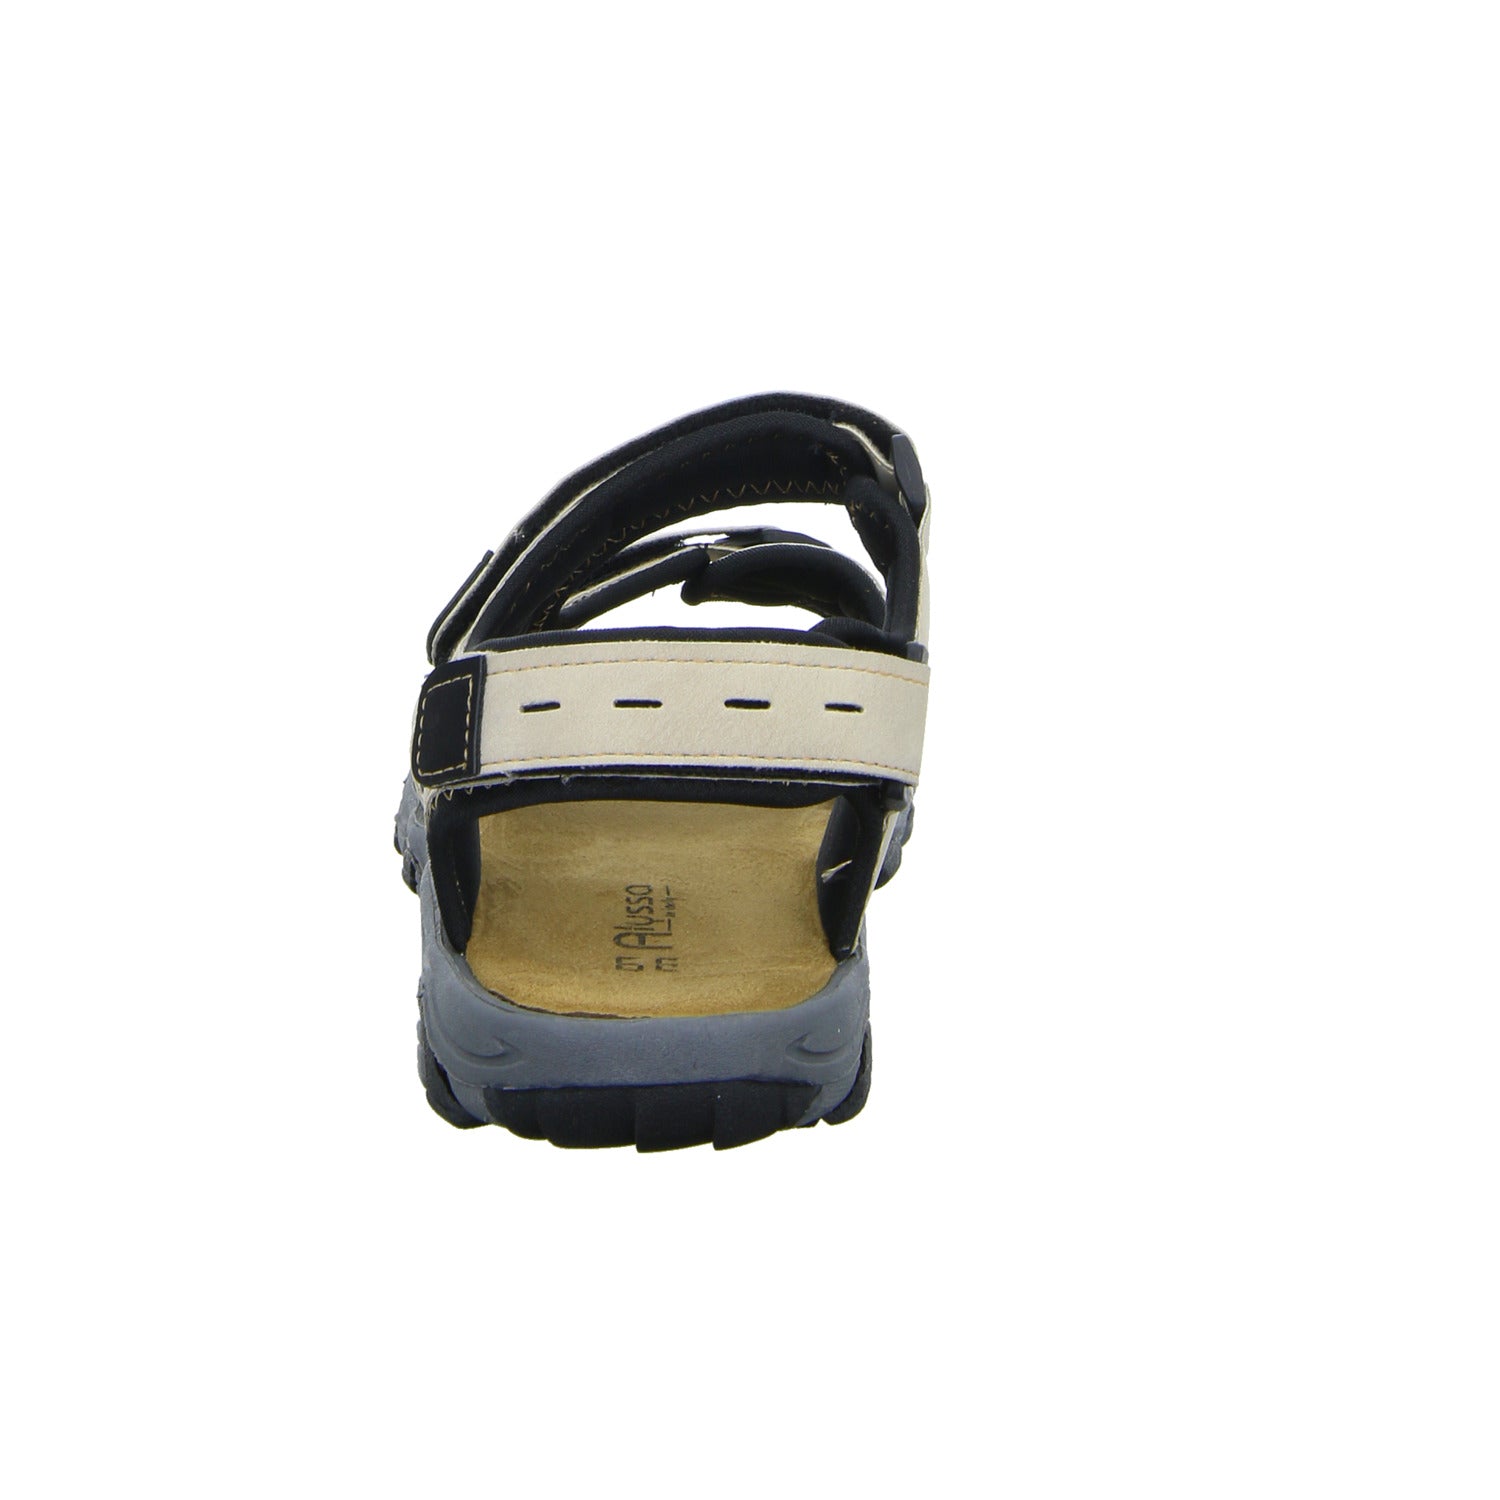 Alyssa Sportliche Sandalette bis 30mm Sohlenhöhe